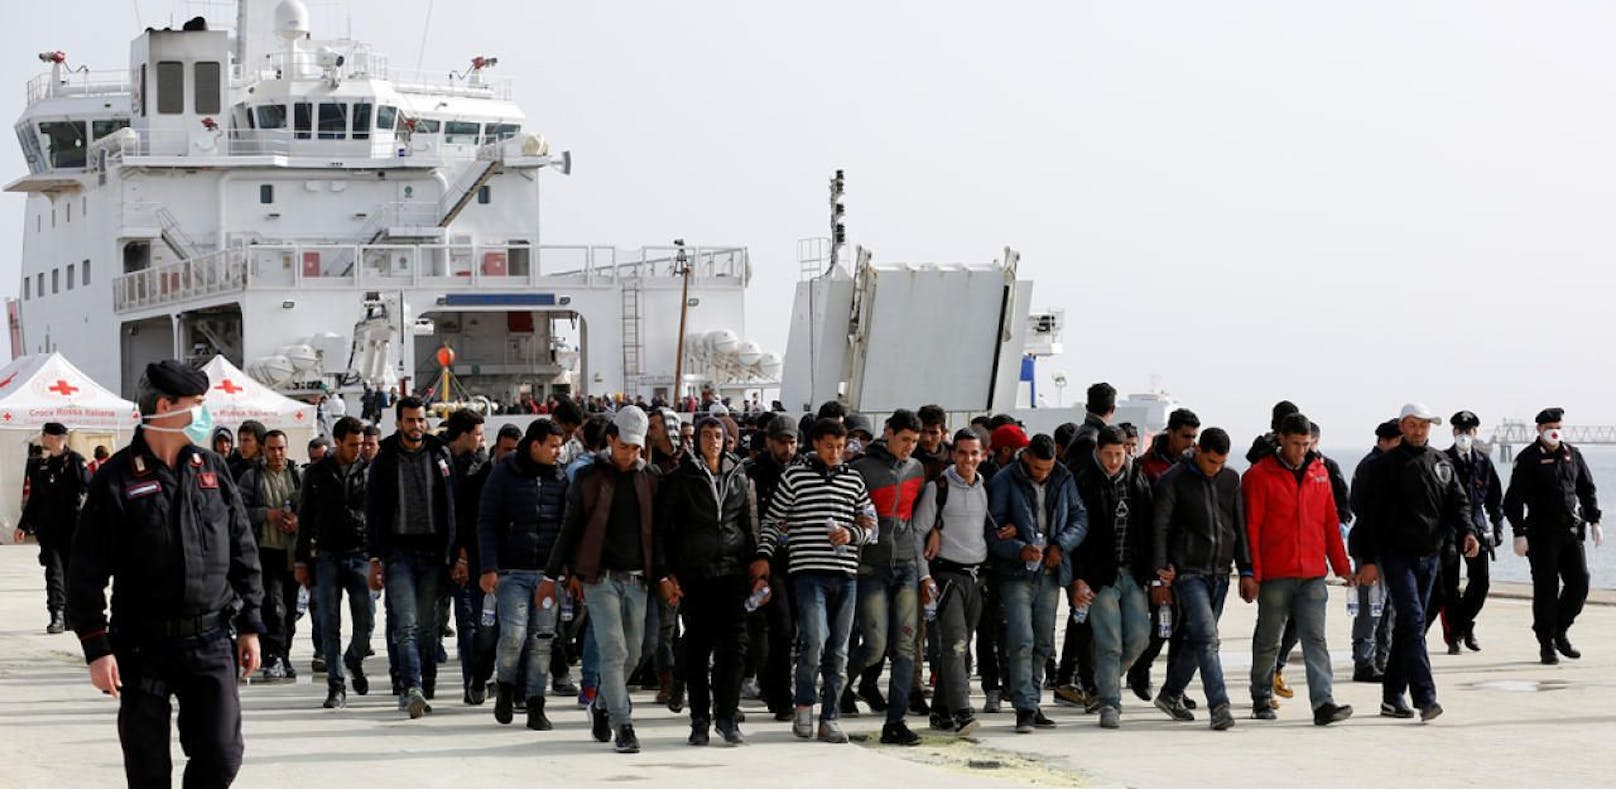 Seit die Balkanroute geschlossen ist, versuchen Tausende Afrikaner über das Mittelmeer in die EU zu gelangen.